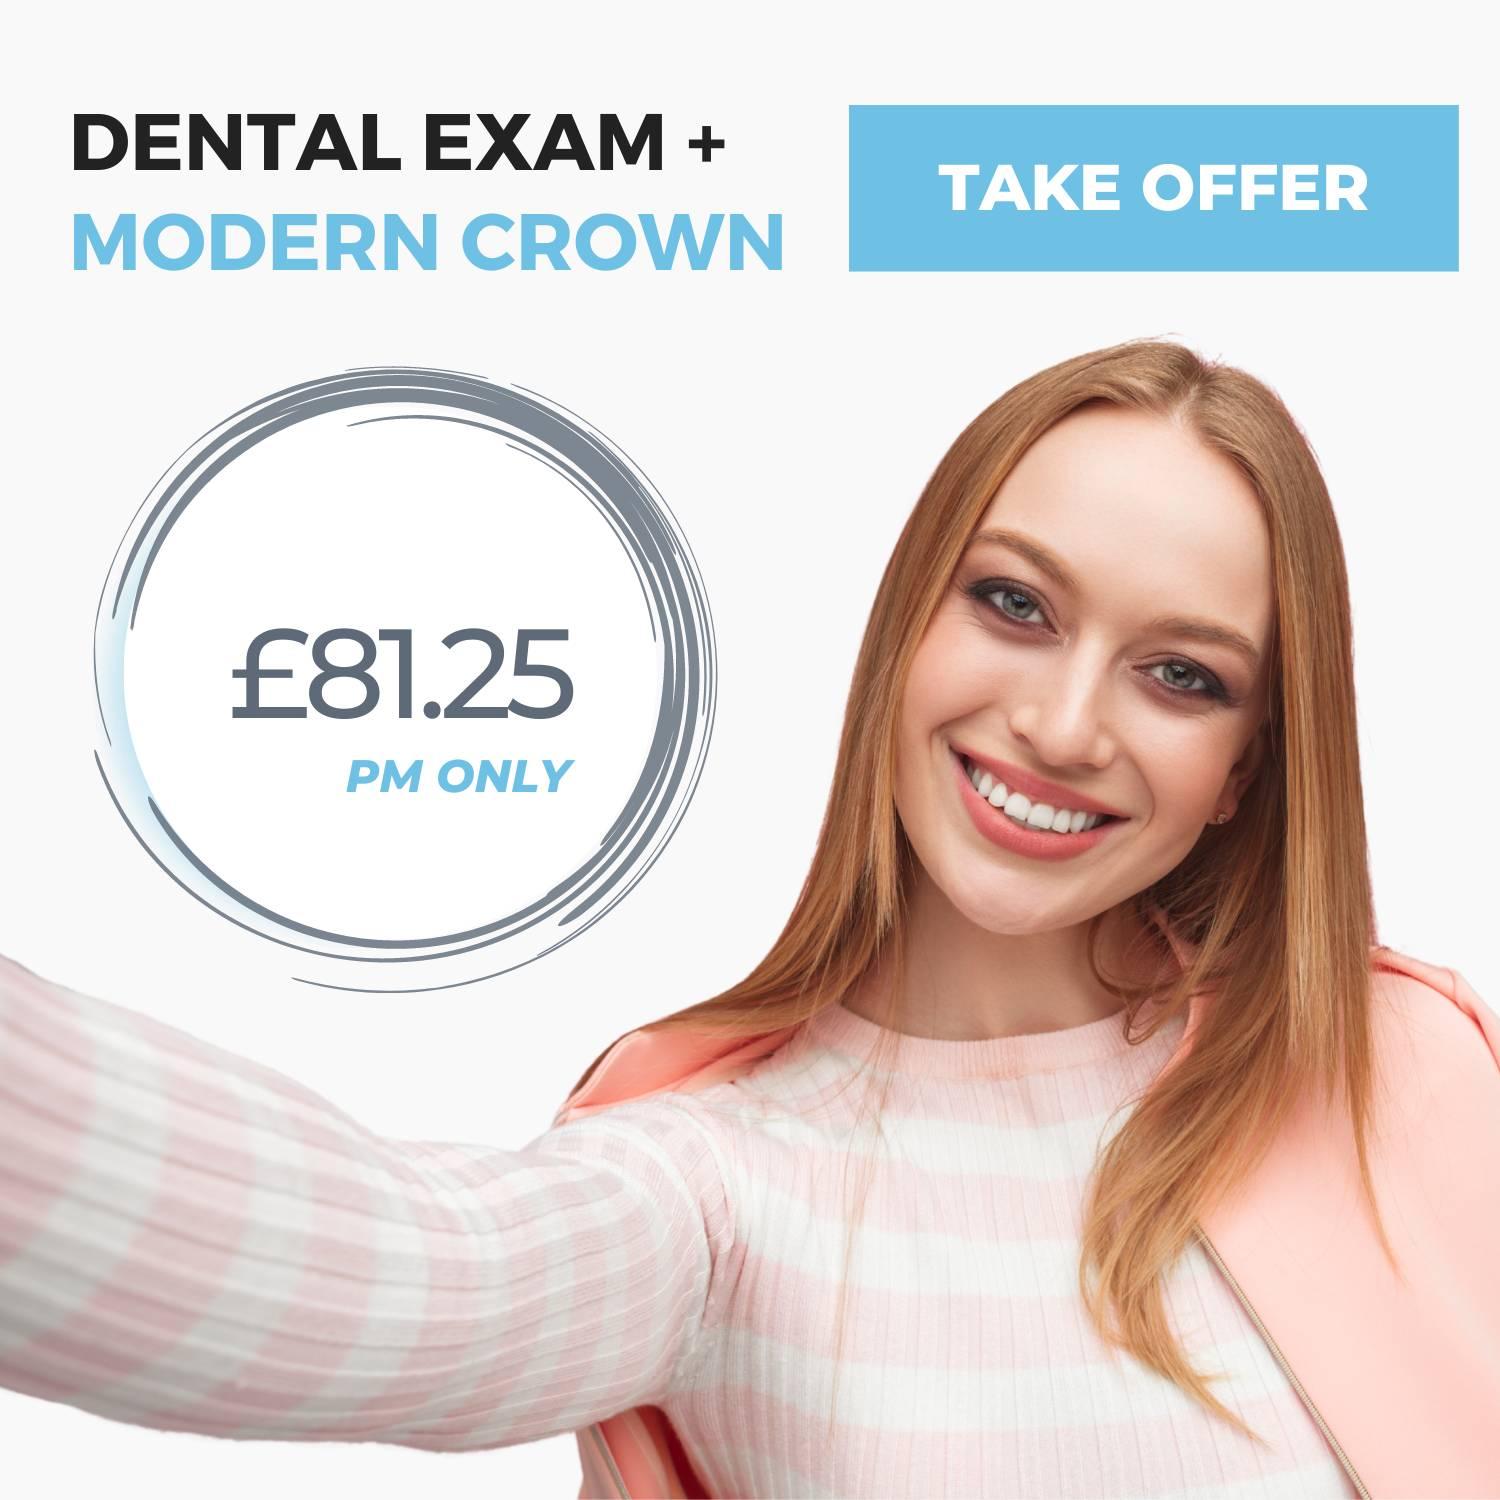 dental exam + crown offer image